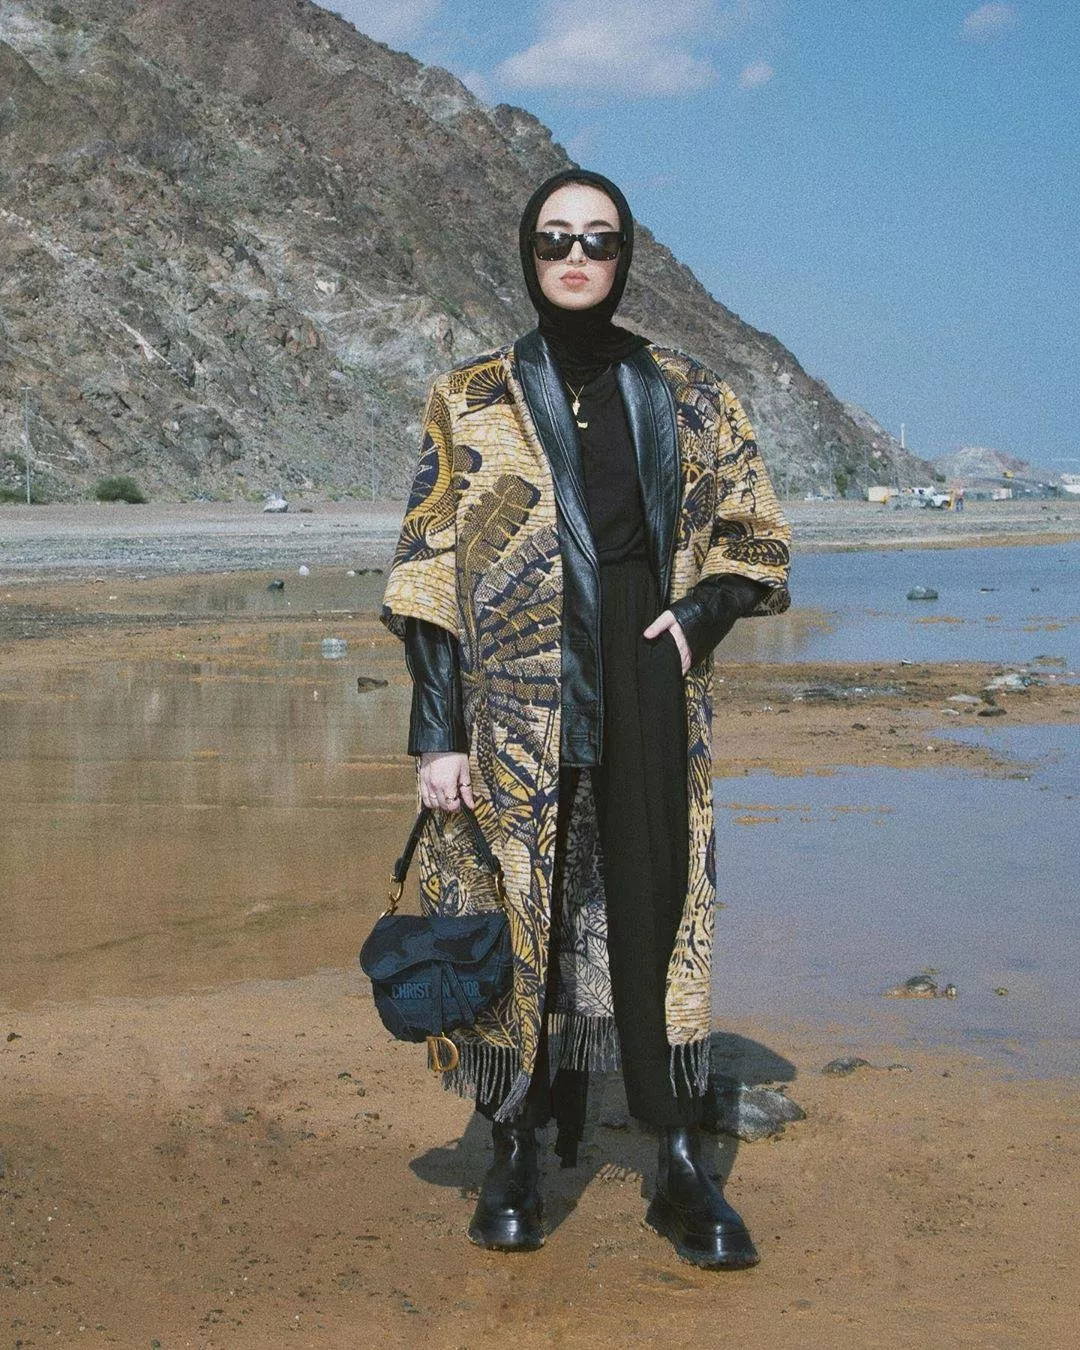 ملابس كاجوال شتوية 2019 للمرأة المحجبة: استوحي إطلالاتكِ من البلوغرز